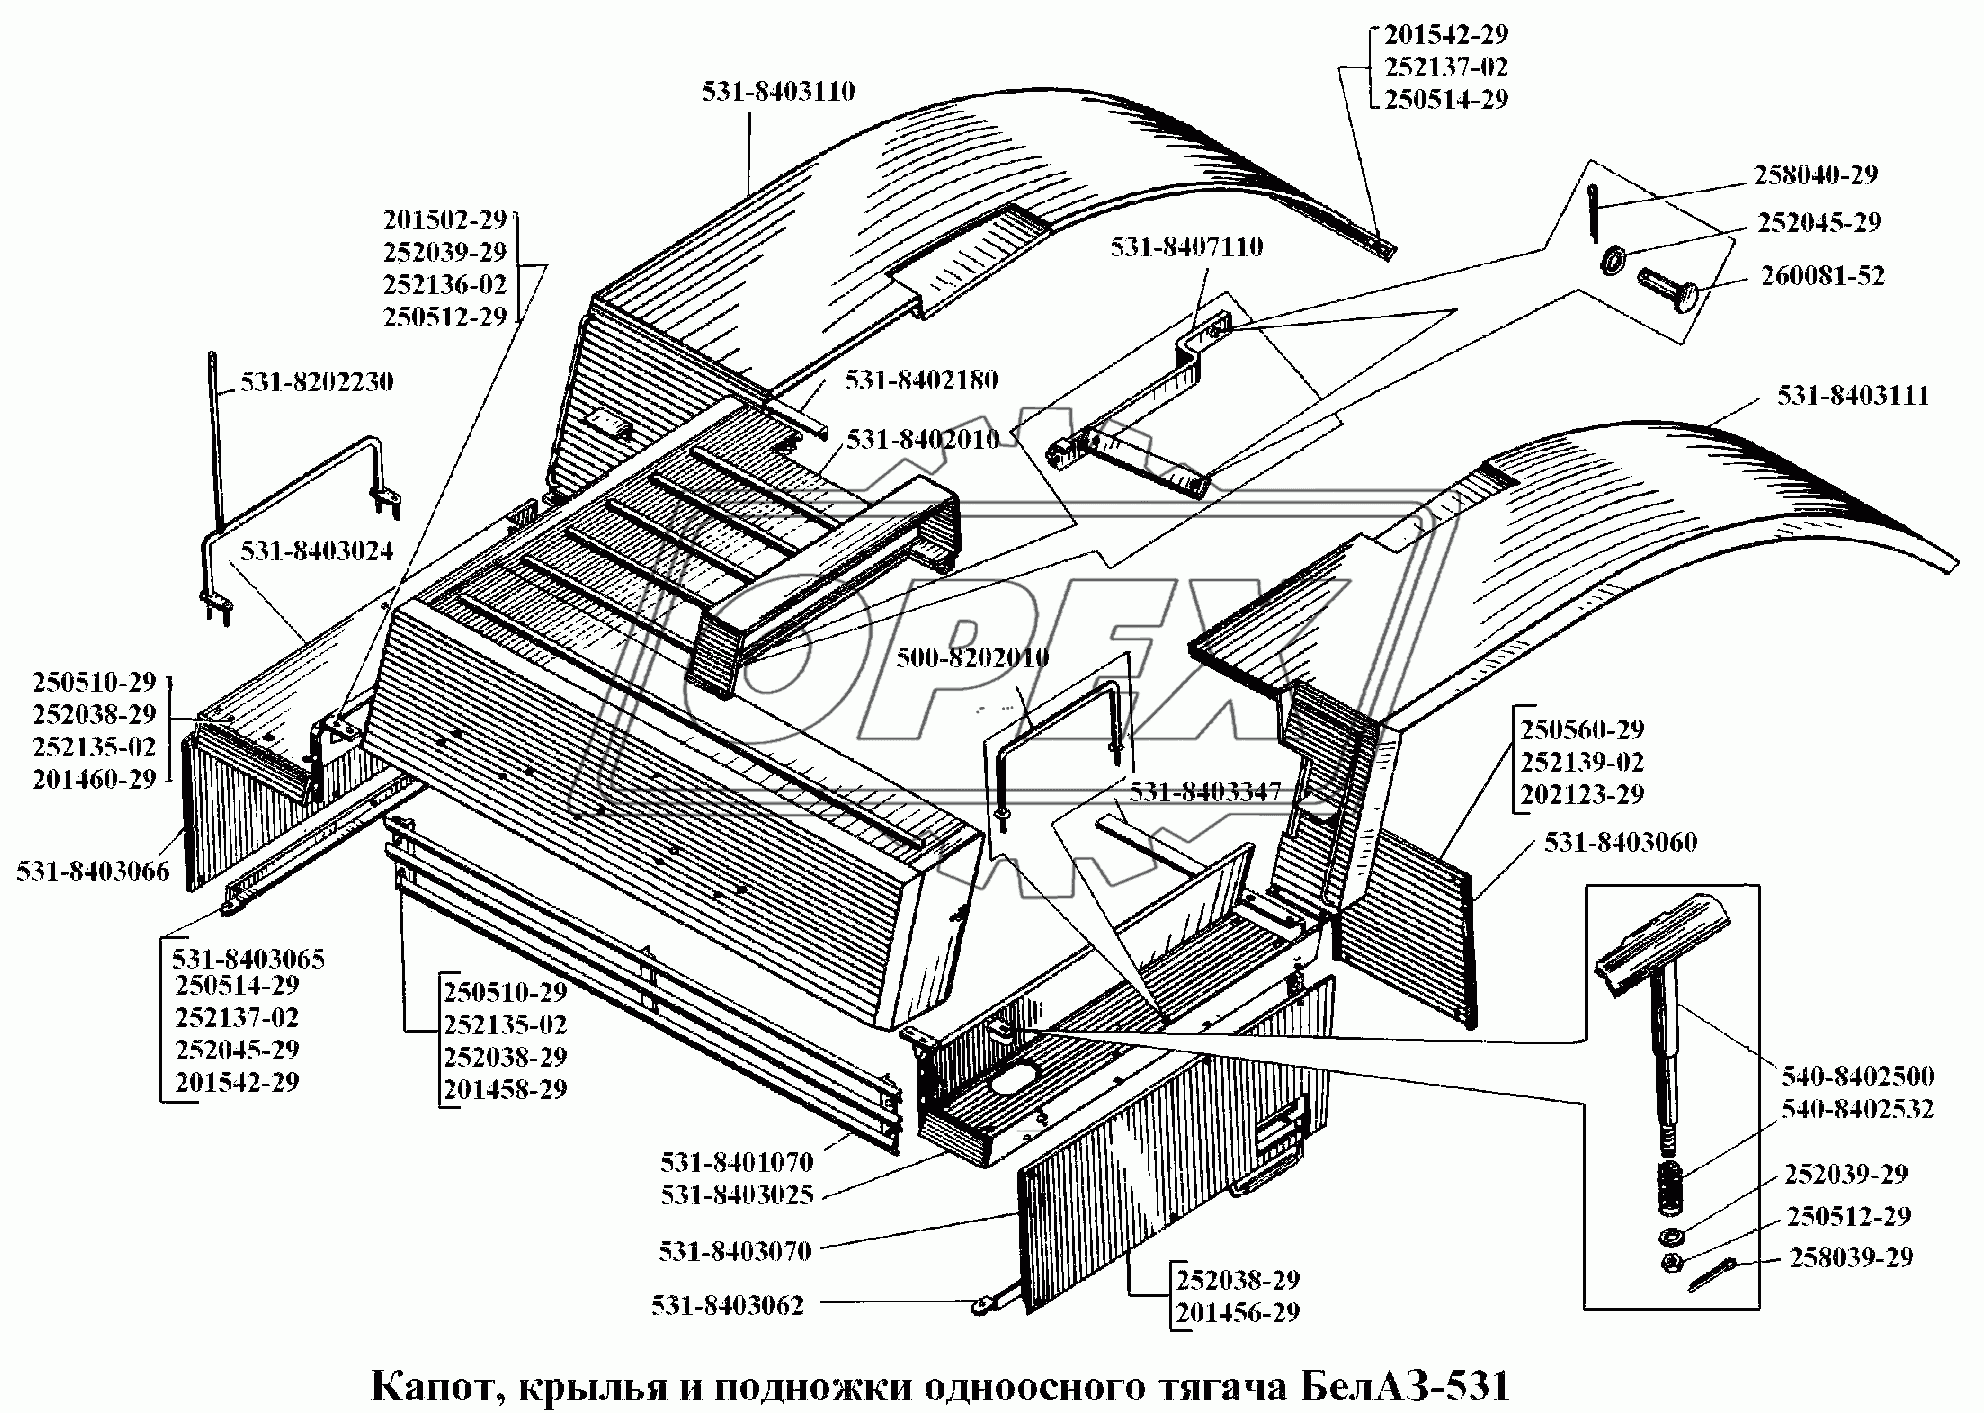 Капот, крылья и подножки одноосного тягача БелАЗ-531